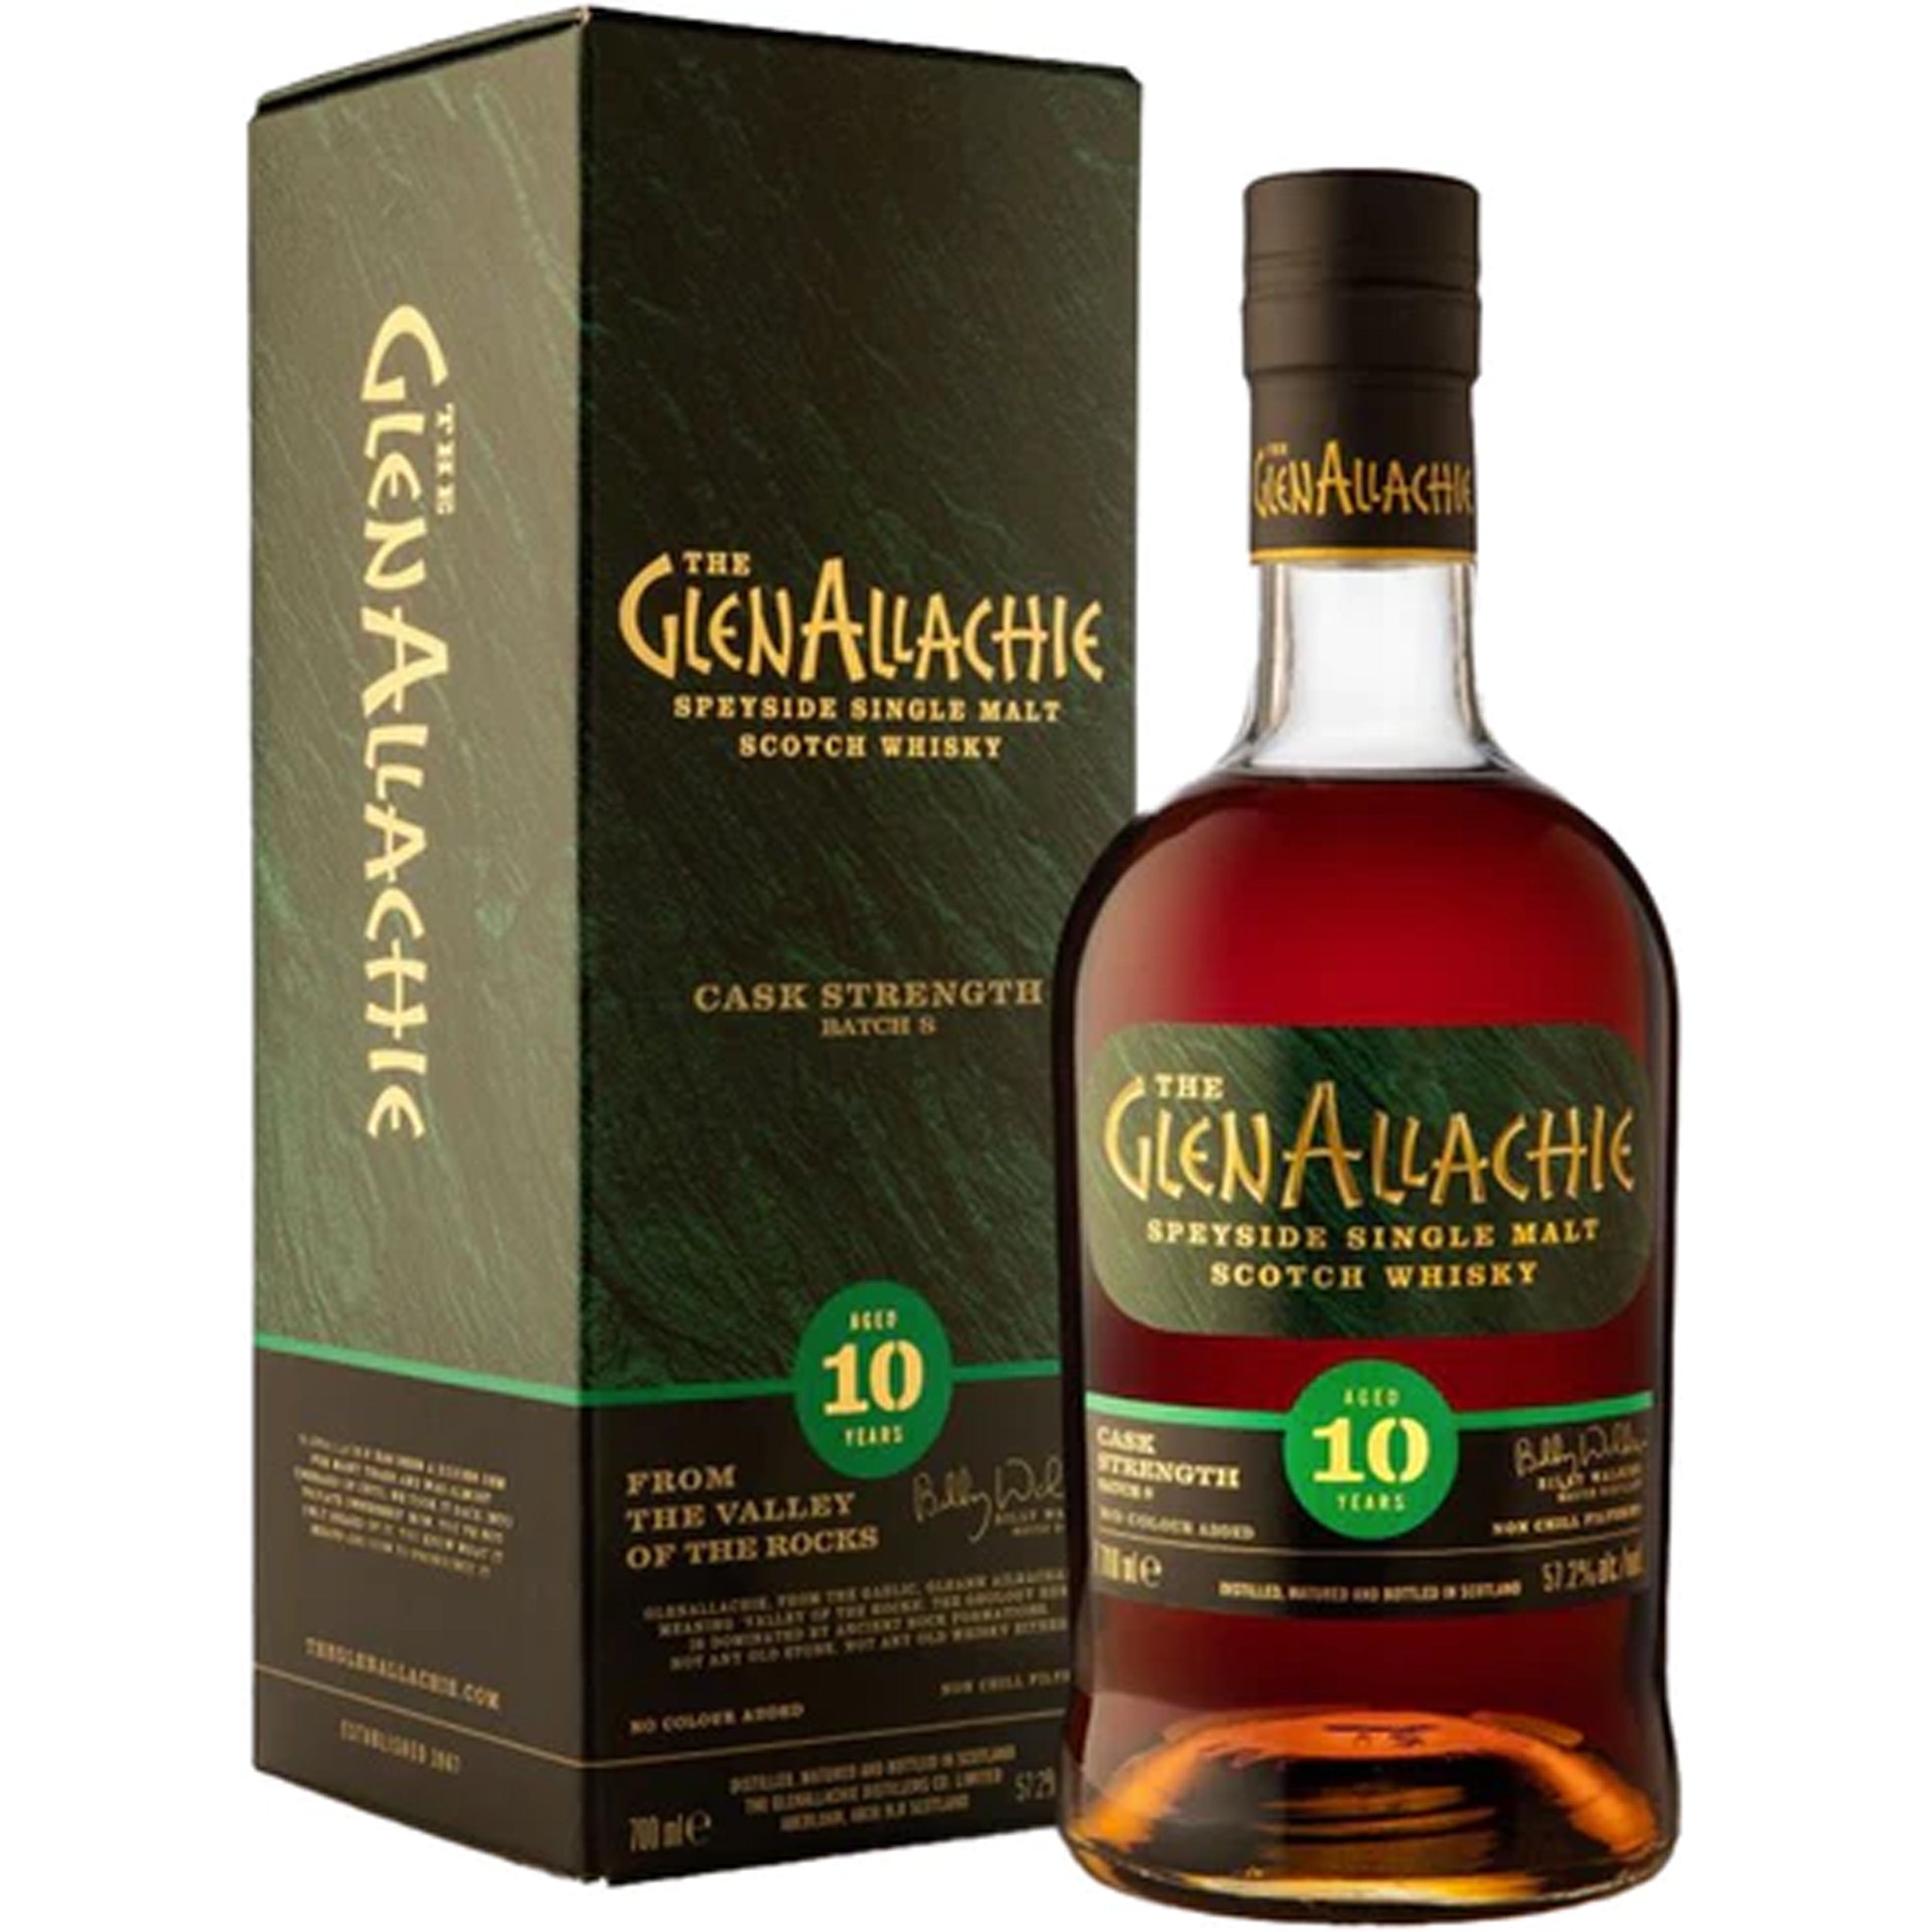 GlenAllachie 10 Years Old Batch 8 Cask Strength Speyside Single Malt Scotch Whisky